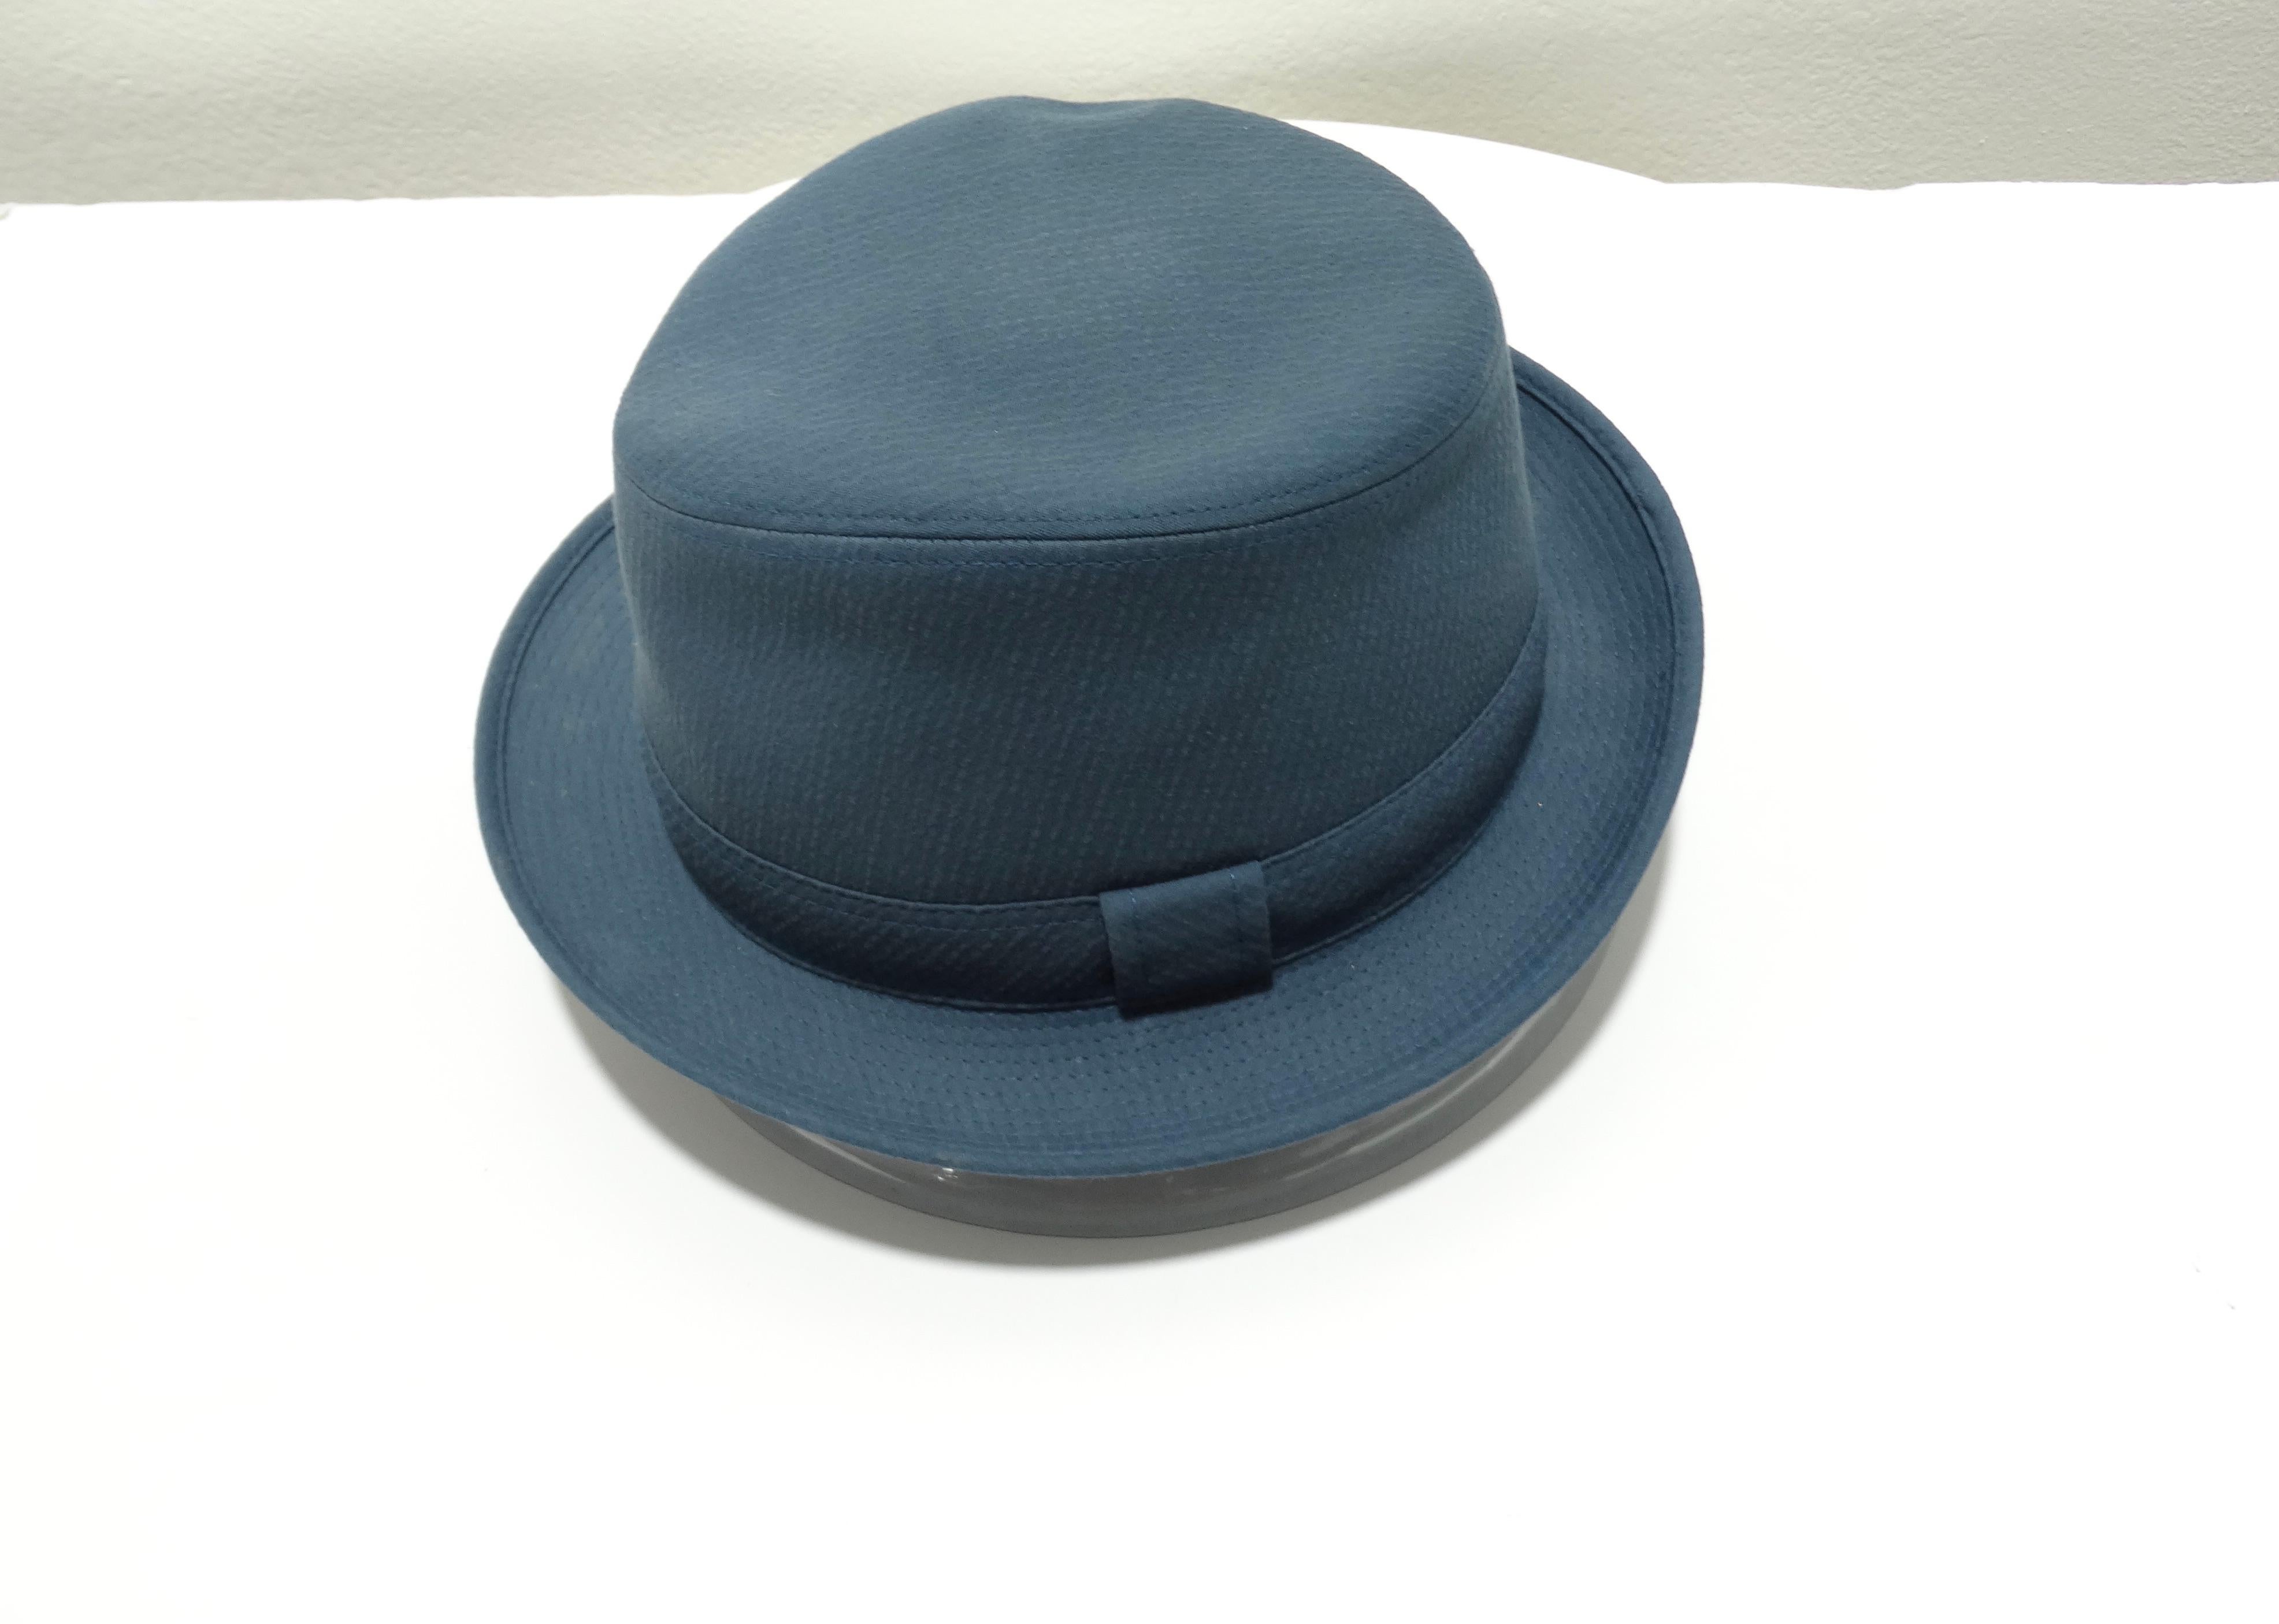 Ce chapeau Hermès turquoise à lanière est un look simpliste et élégant qui fait preuve de classe tout en ajoutant une touche de couleur. Faites ressortir votre côté créatif et coloré avec des nuances à la fois féminines et masculines qui peuvent